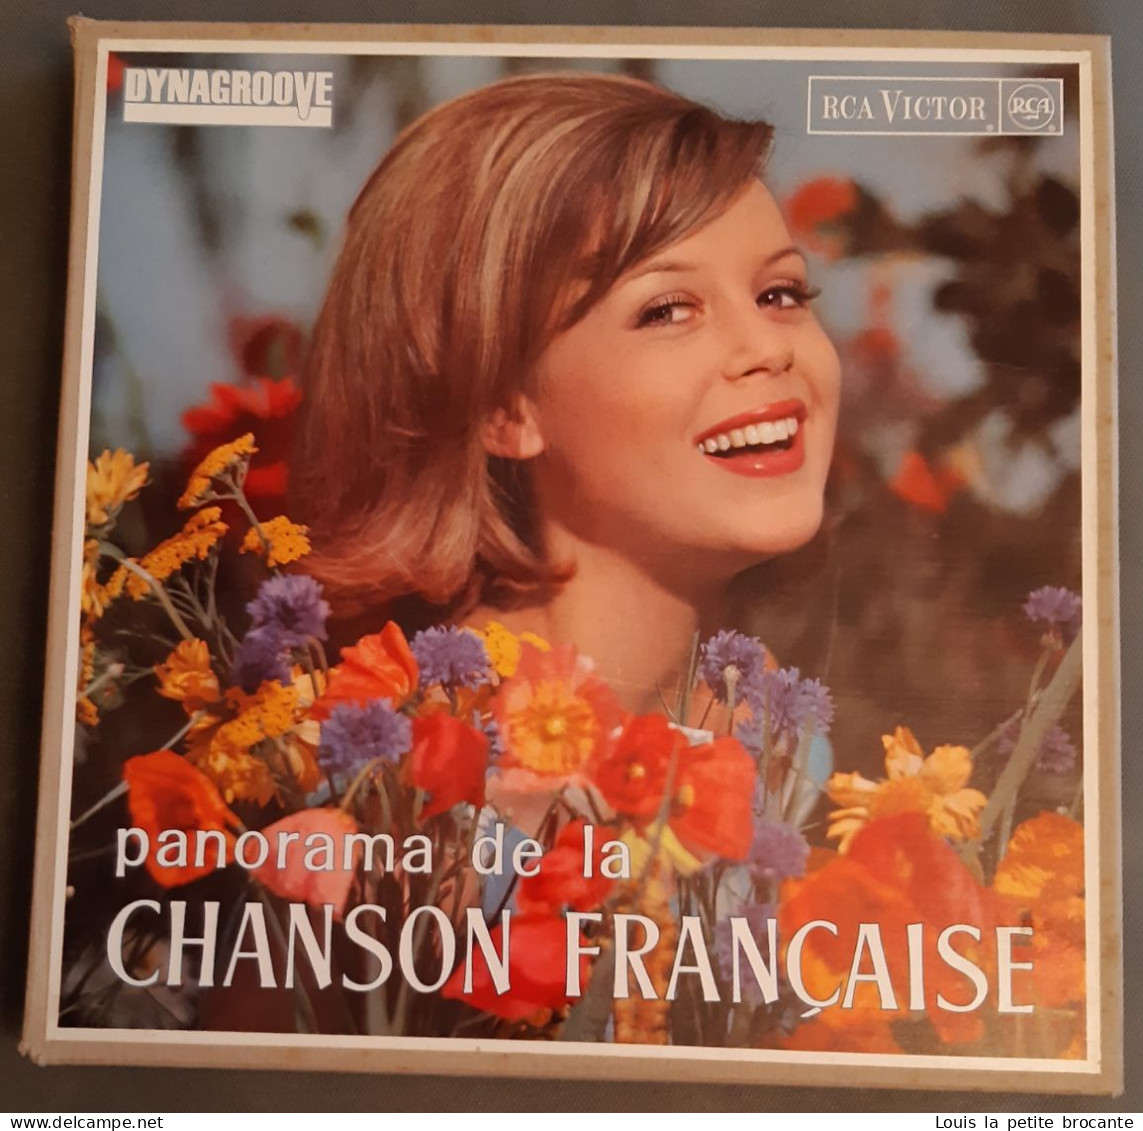 Coffret De 10 Disques Vinyles, PANORAMA DE LA CHANSON FRANCAISE - DINAGROOVE - RCA VICTOR 1964, 1 Chanson Rayée - Collections Complètes